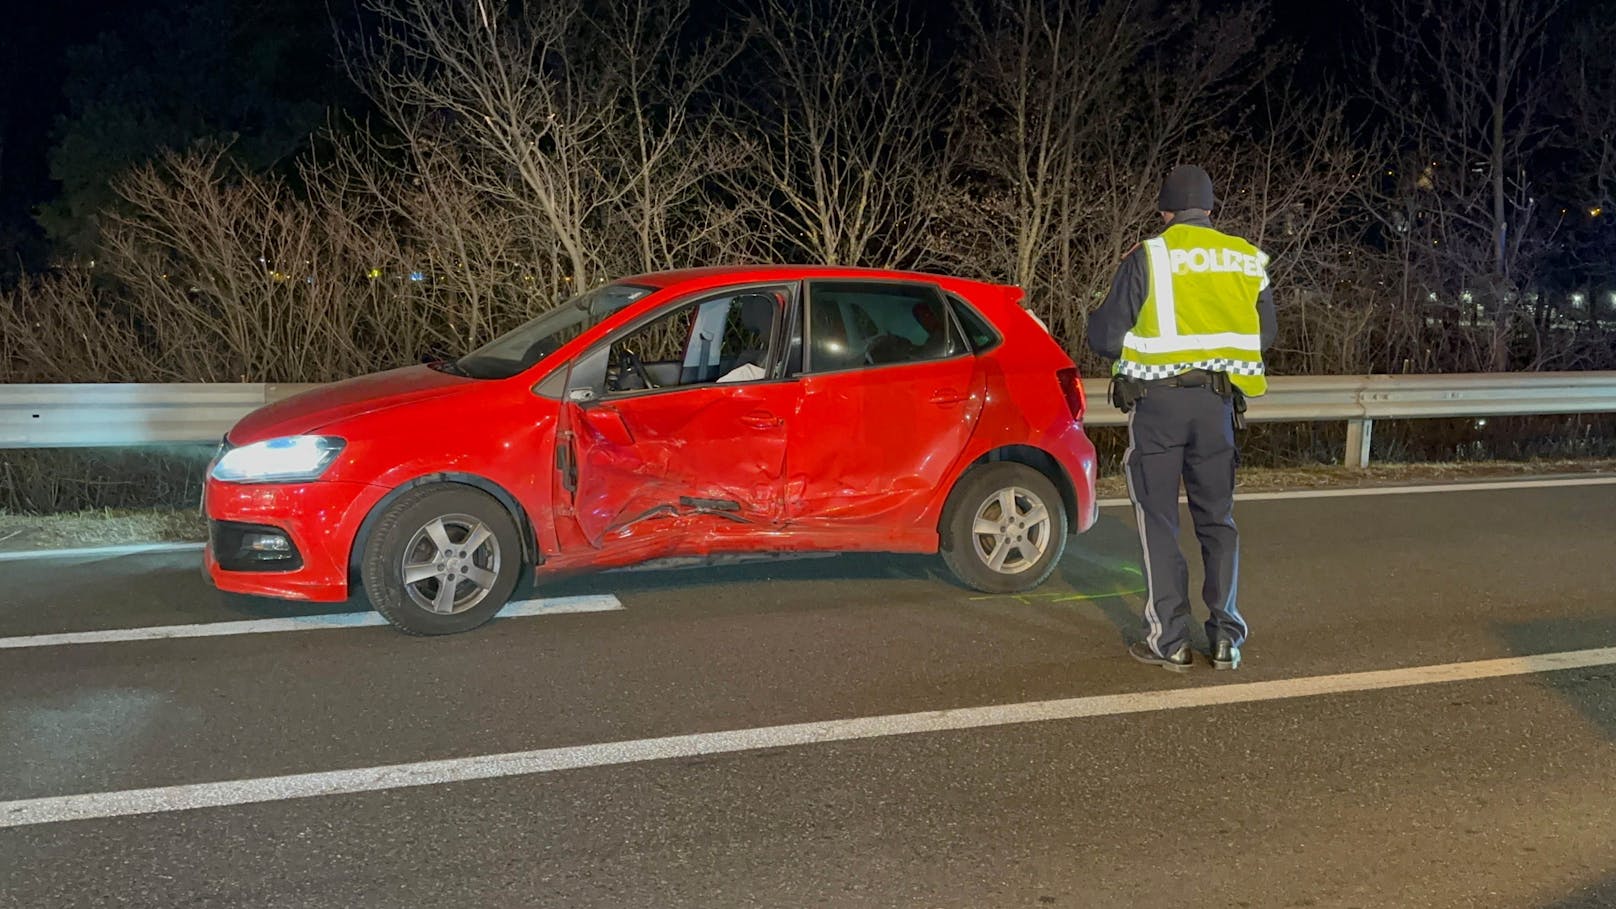 Rettungseinsatz am Mittwoch in Tirol! An einer Kreuzung in Schwaz kollidierten zwei junge Autofahrer – beide wurden bei dem Unfall verletzt.